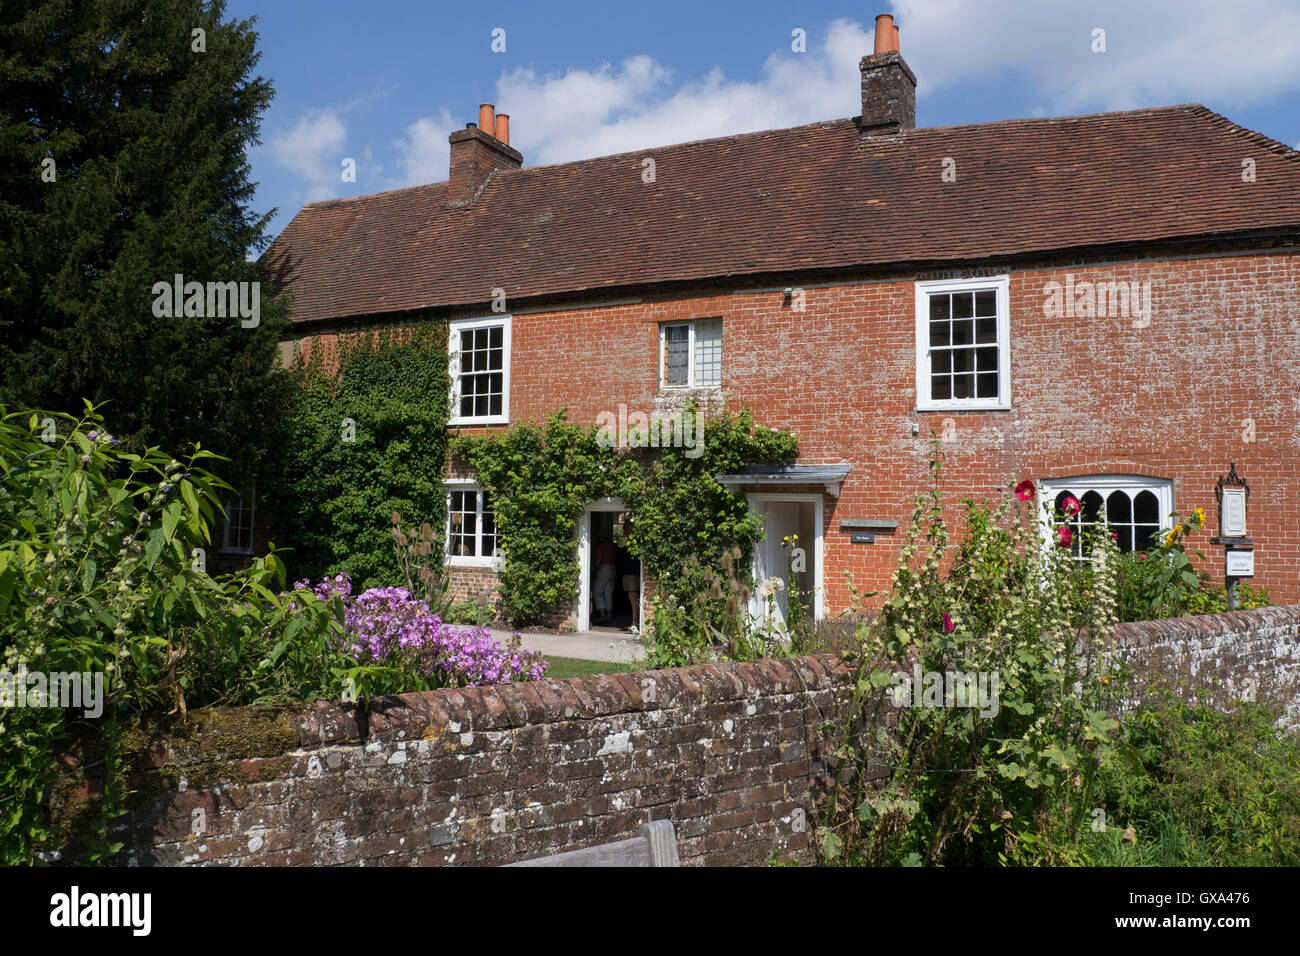 Maison de Jane Austen,Chawton, Hampshire, Angleterre. Banque D'Images